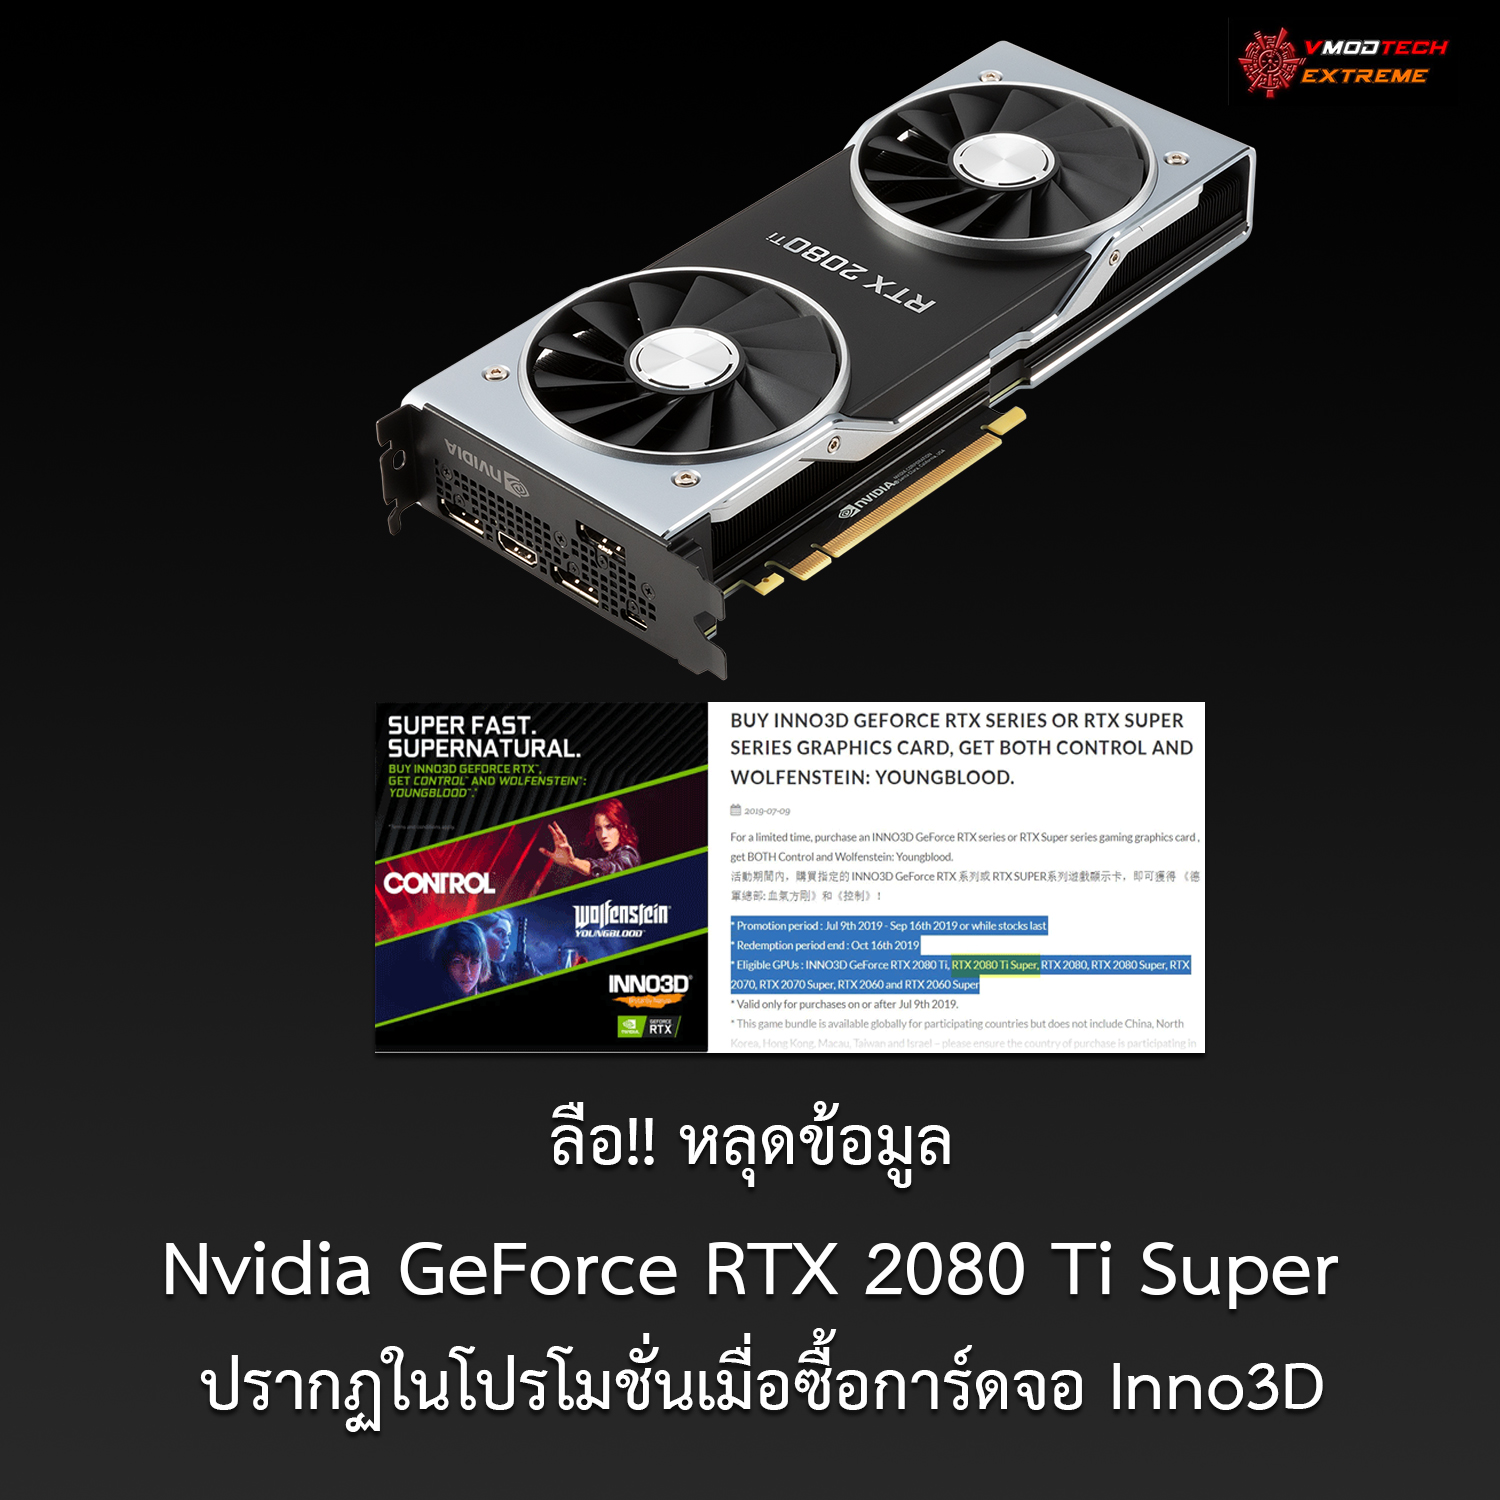 nvidia geforce rtx 2080 ti super ลือ!!หลุดข้อมูล Nvidia GeForce RTX 2080 Ti Super 